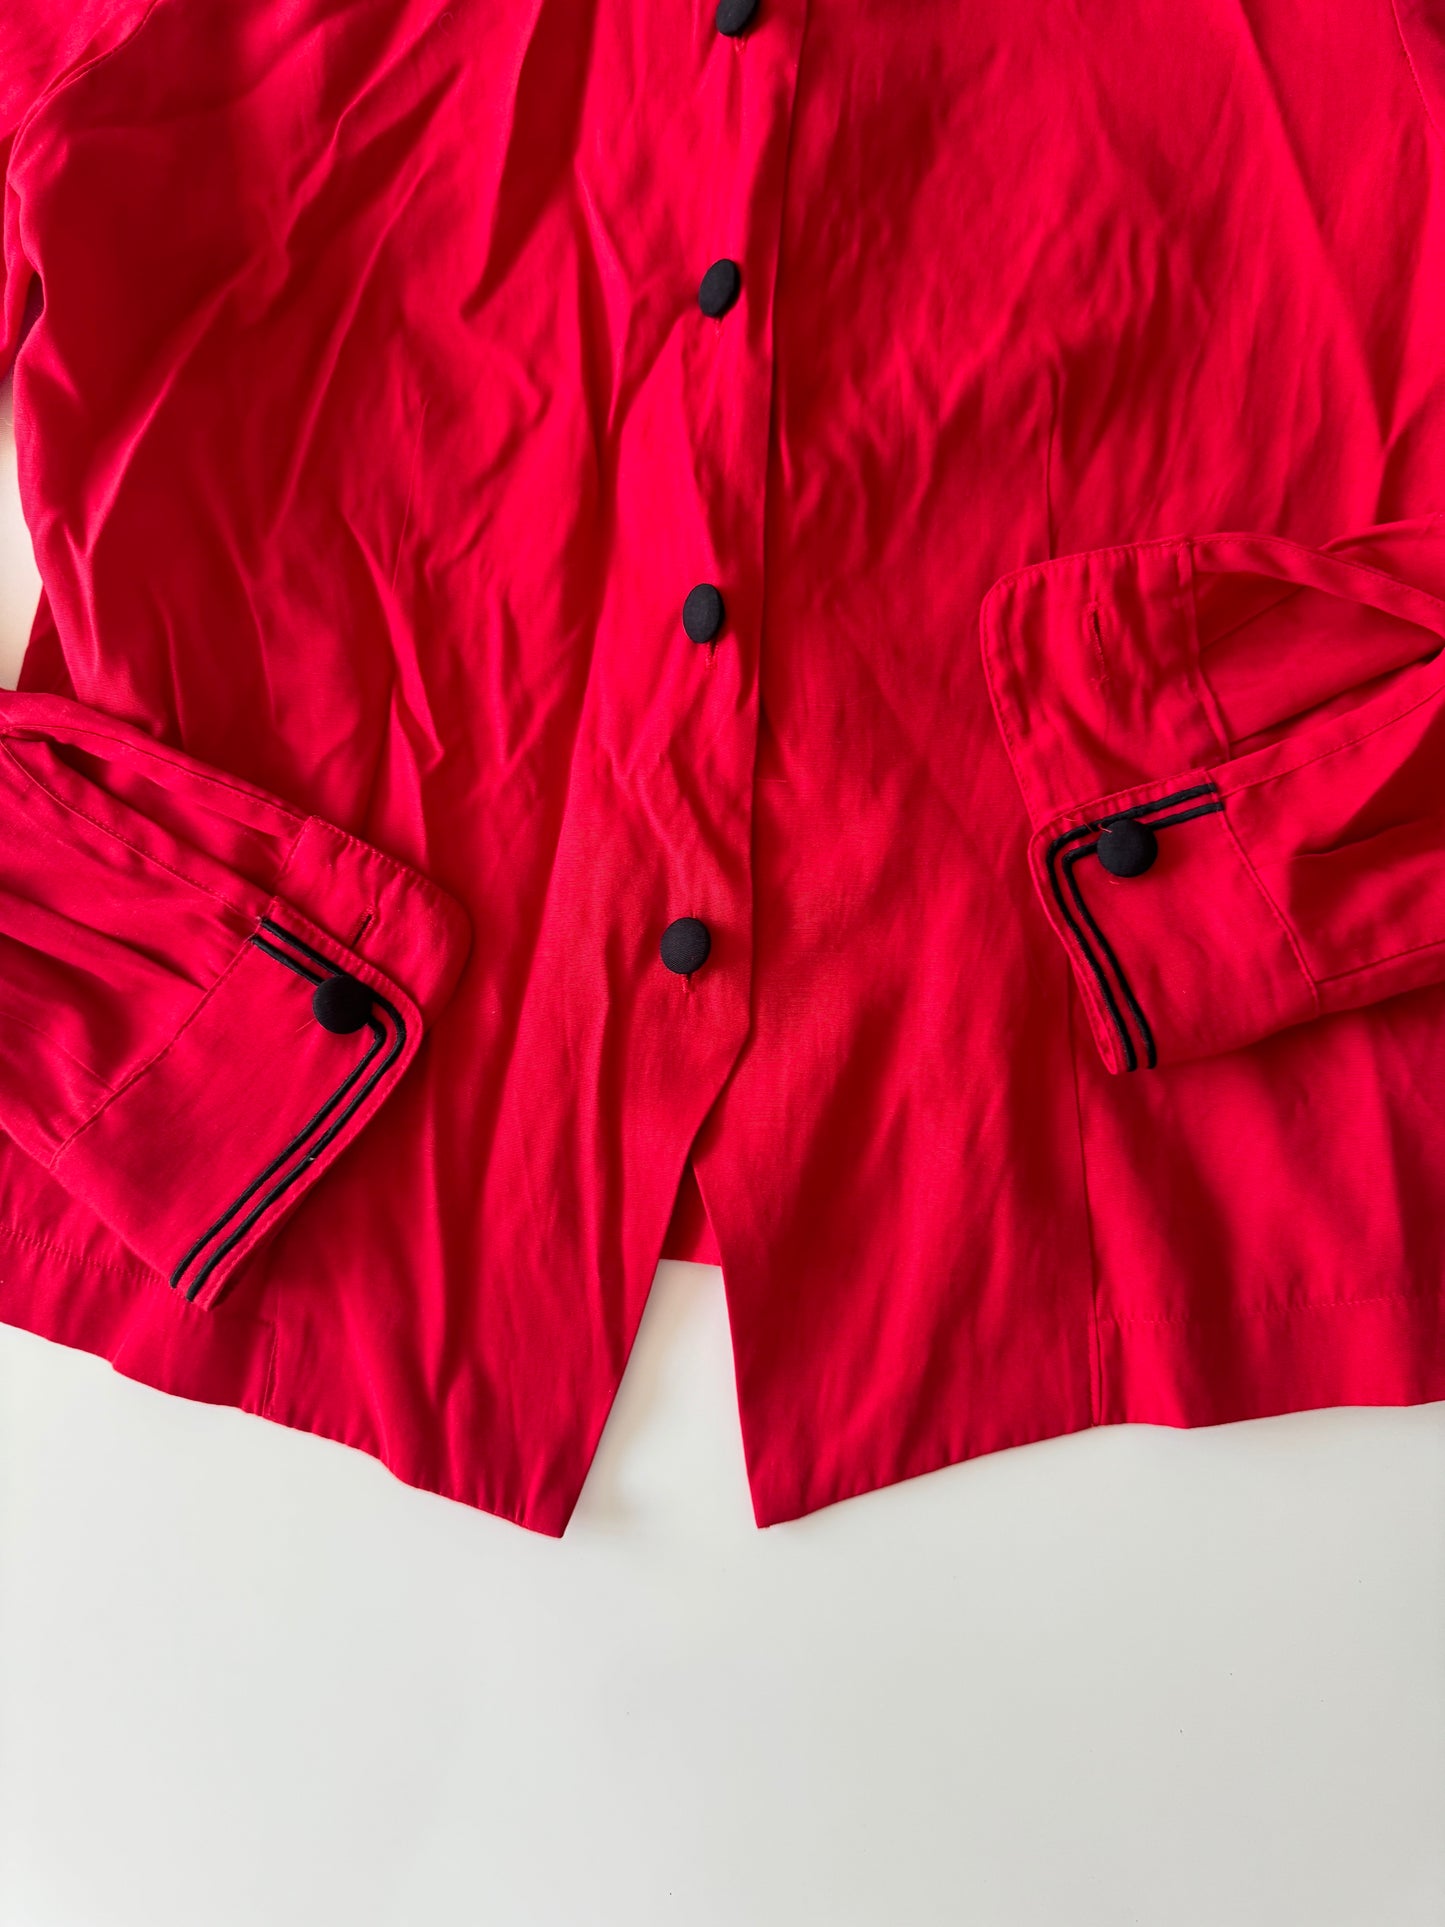 Camisa roja vintage, Talla S, Mujer